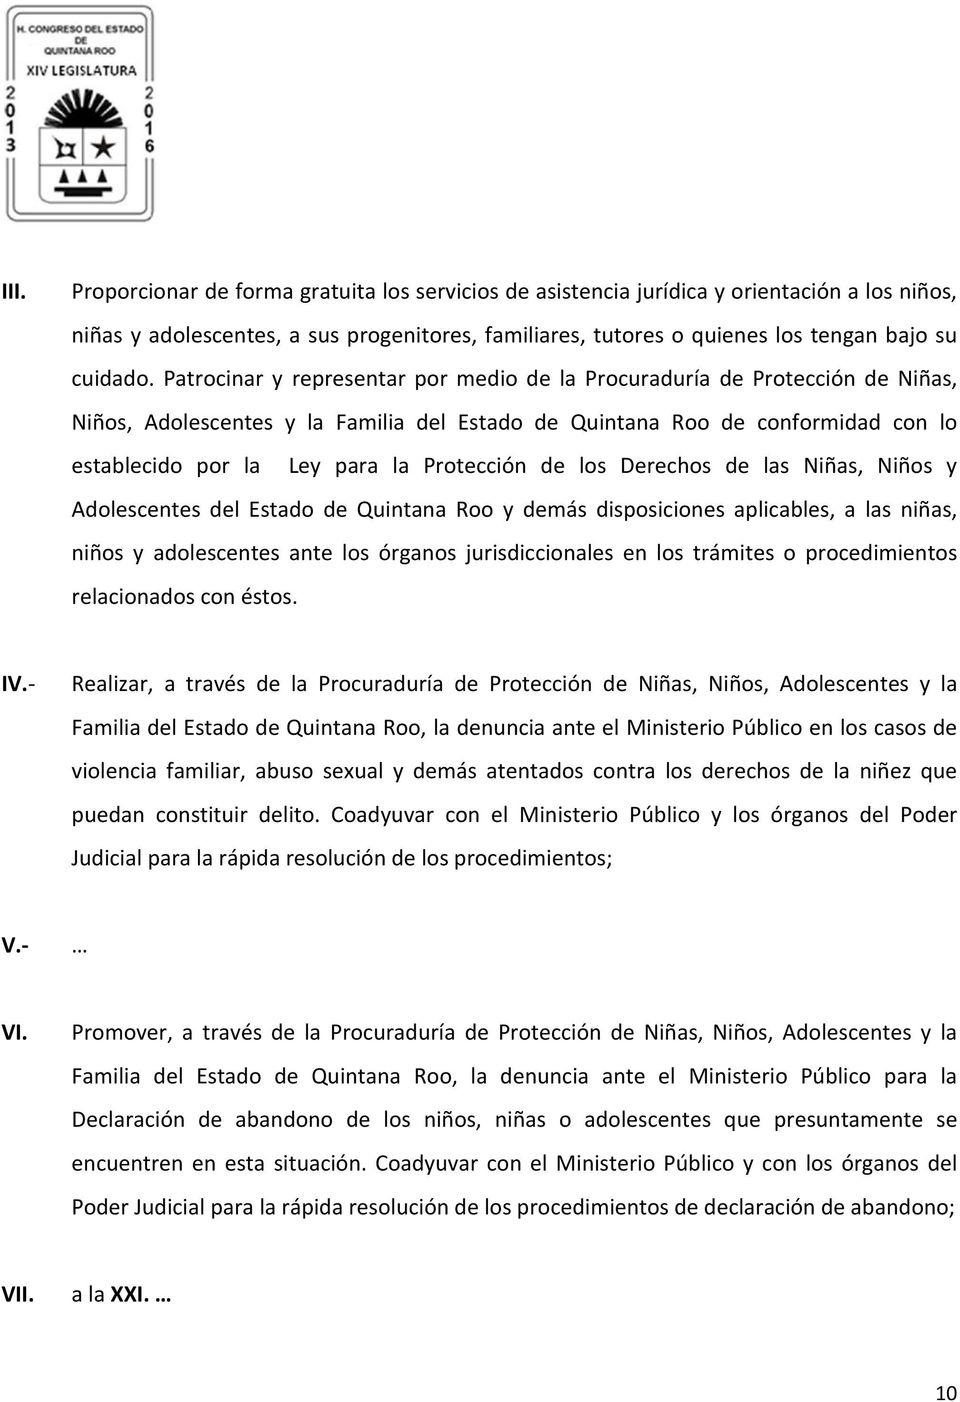 Protección de los Derechos de las Niñas, Niños y Adolescentes del Estado de Quintana Roo y demás disposiciones aplicables, a las niñas, niños y adolescentes ante los órganos jurisdiccionales en los